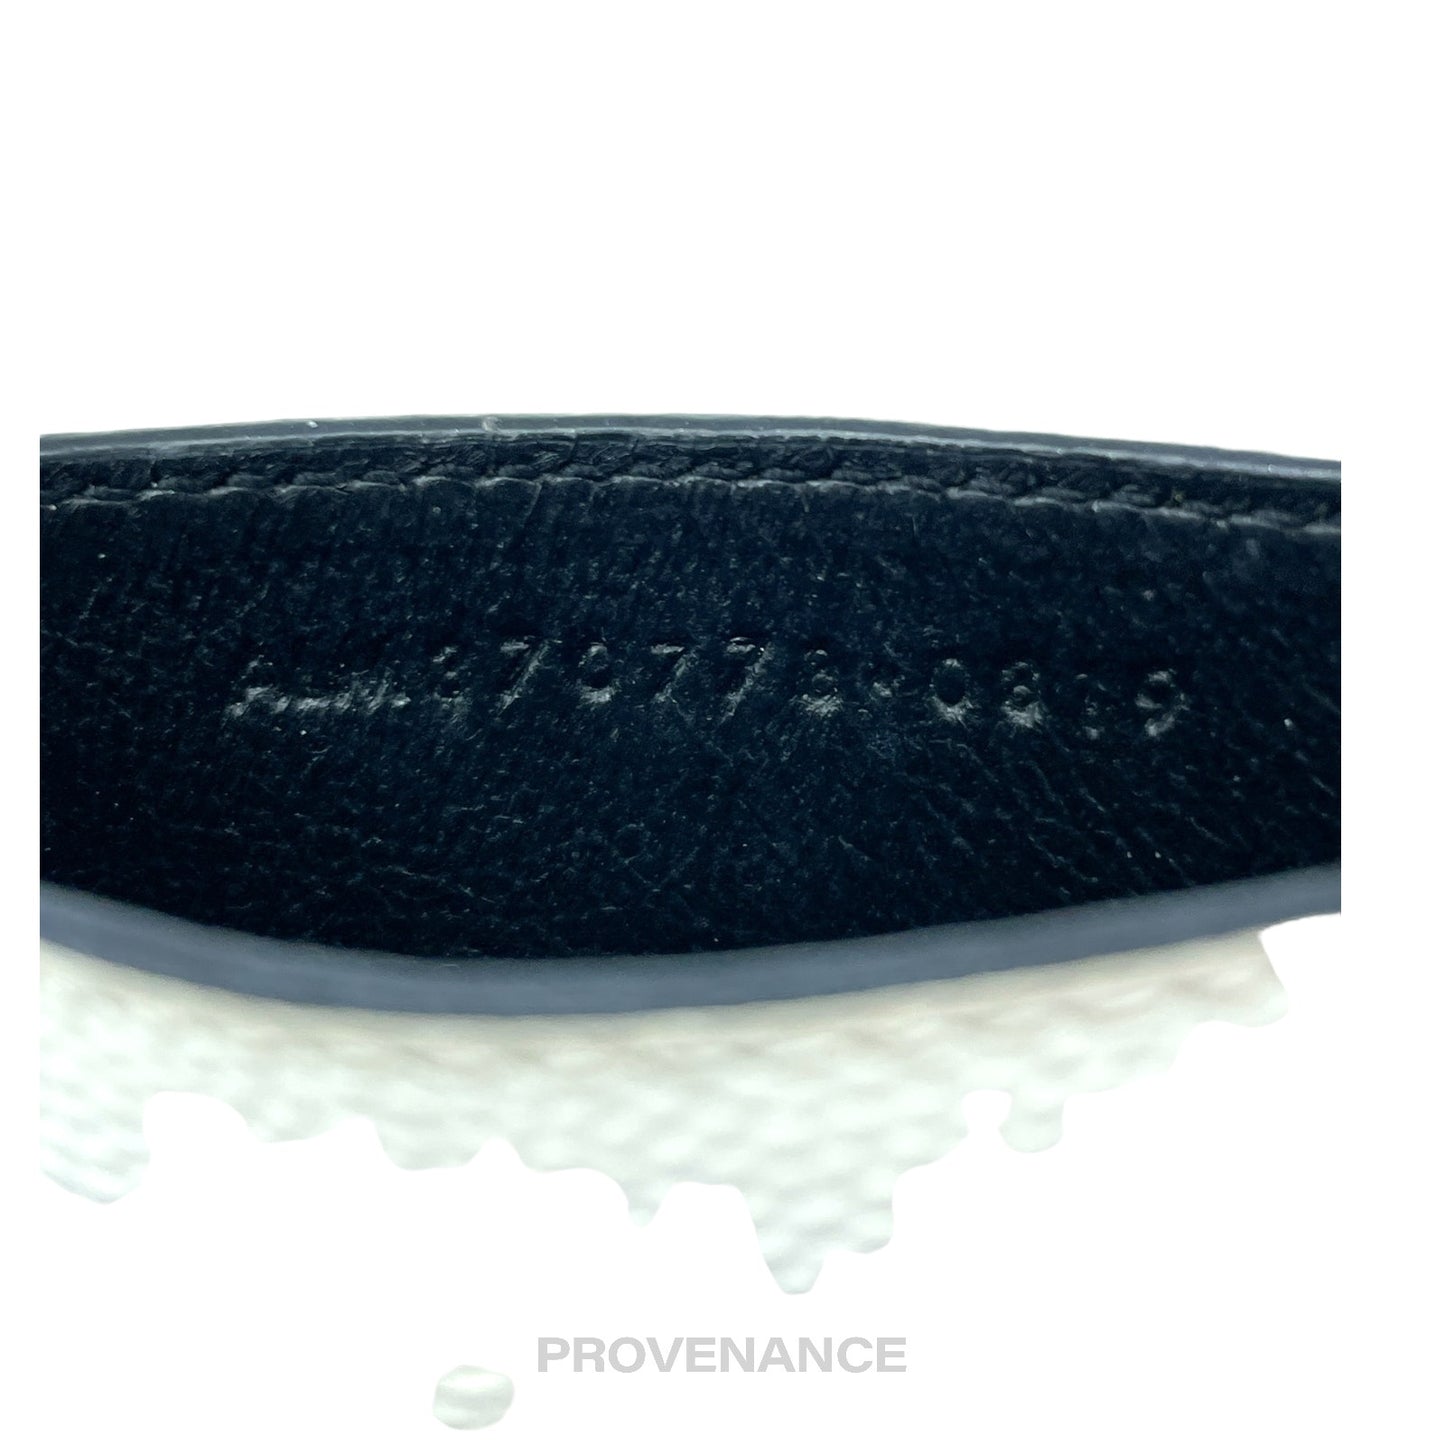 🔴 Saint Laurent Paris SLP YSL Cardholder Wallet - White